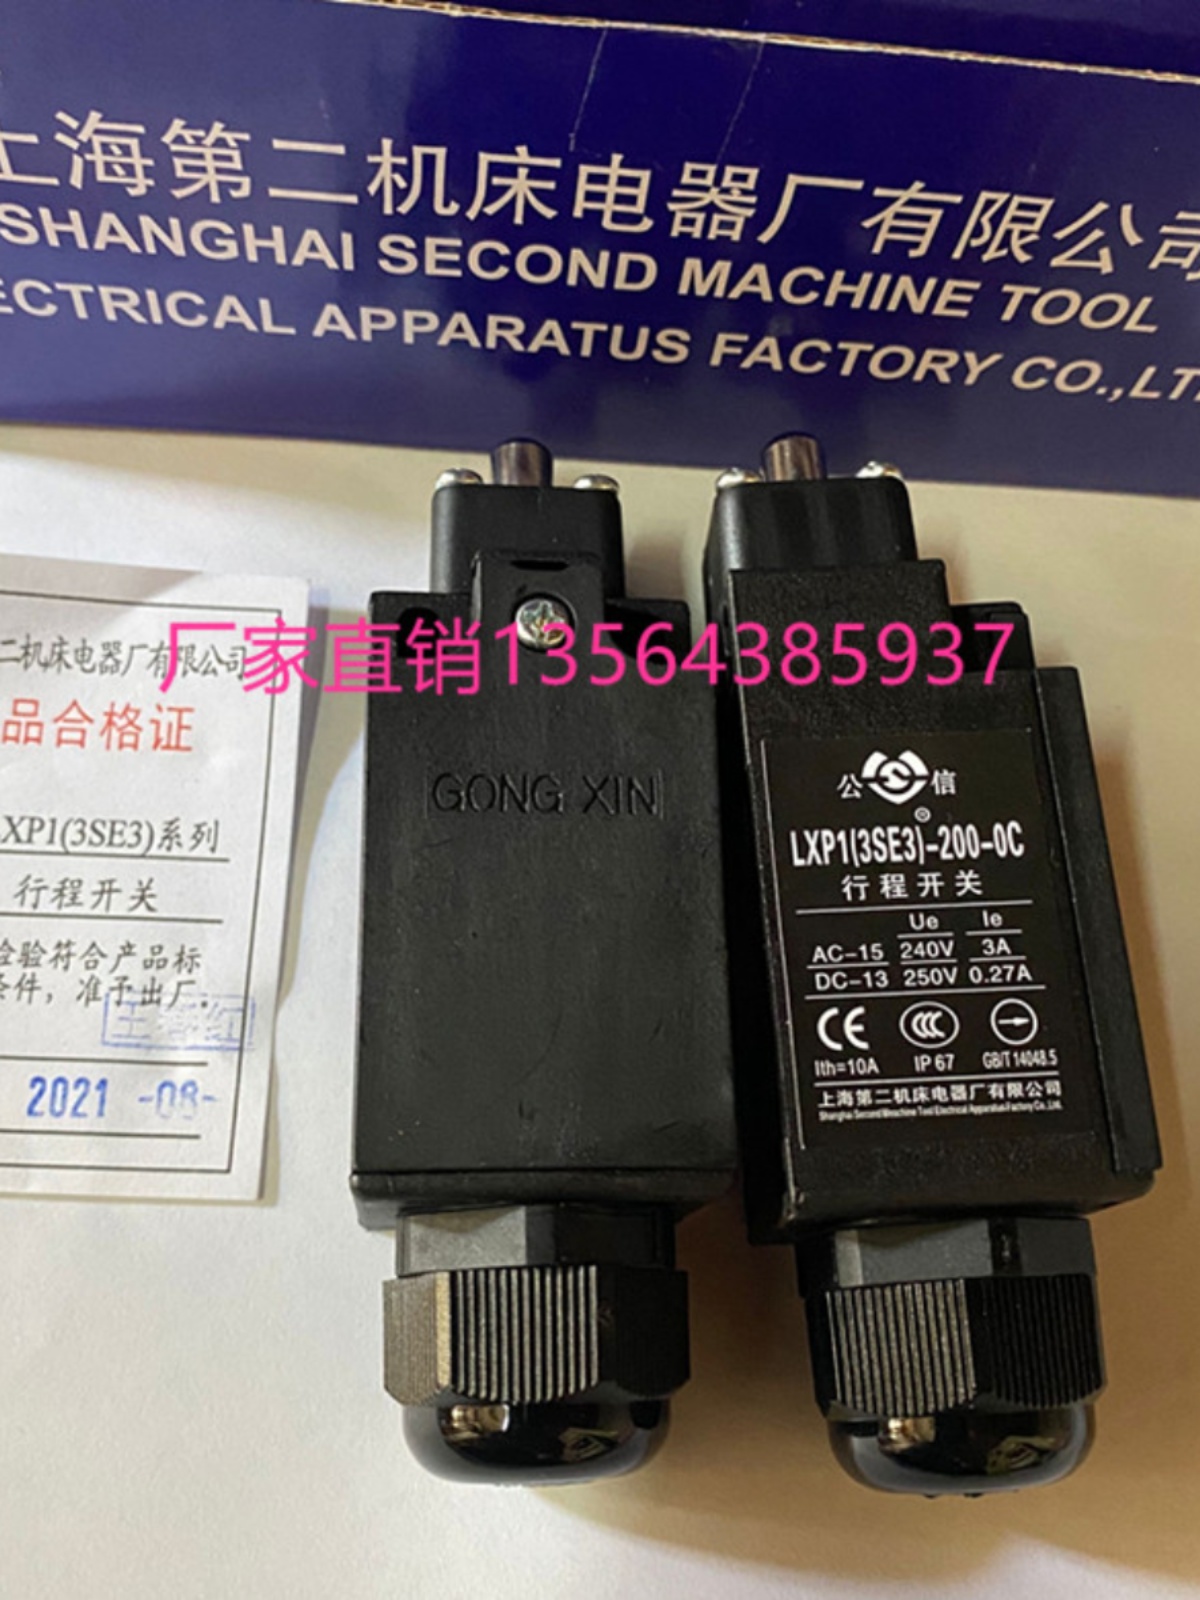 公信行程开关 LXP1-(3SE3)-200-1KC 200-0C 上海第二机床电器厂